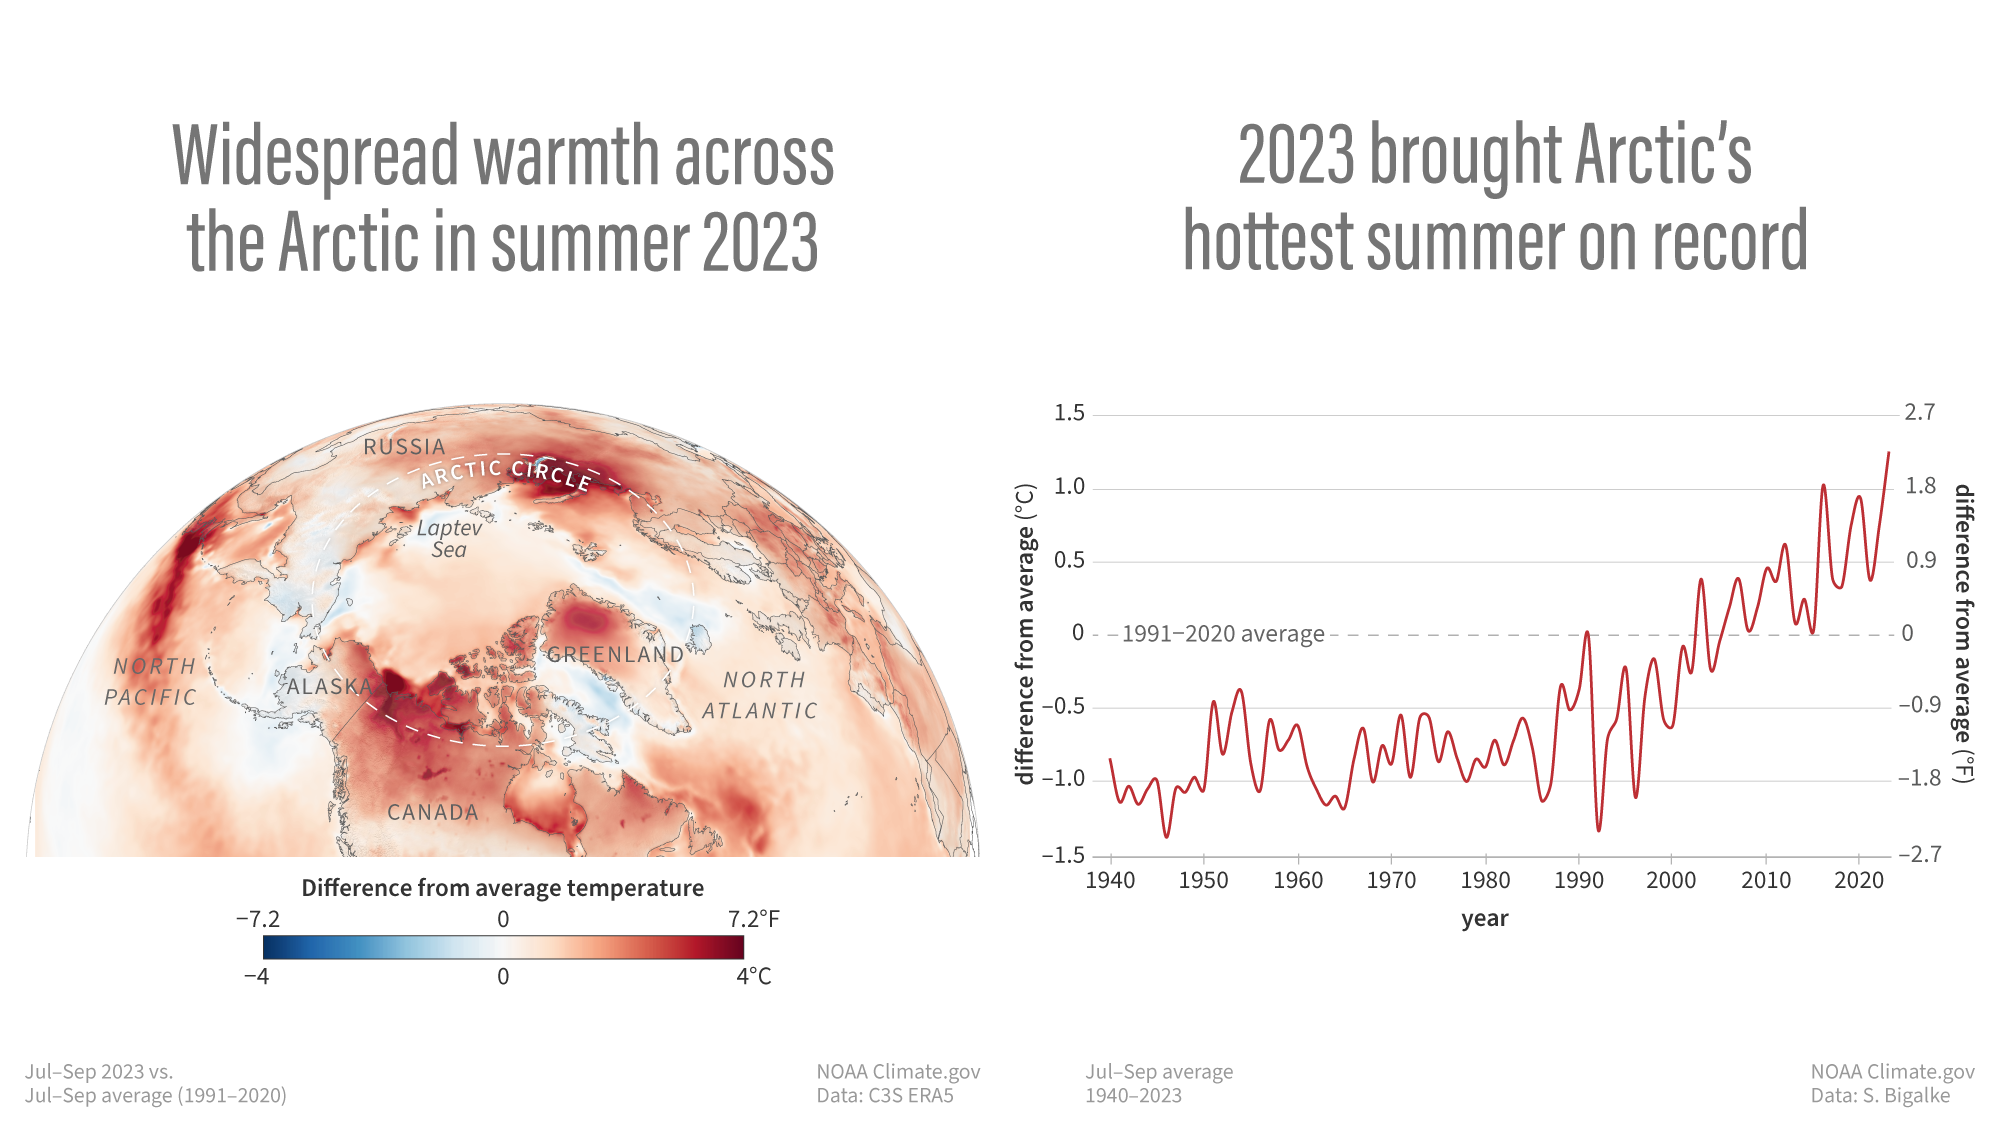 왼쪽은 2023년 북극의 여름철(7~9월) 기온을 표시한 지도. 가장 진한 빨간색으로 칠해진 알래스카 북부와 캐나다 일부 지역은 1991~2020년 약 30년간의 평균 기온보다 섭씨 4도 이상 높았다.  오른쪽은 1940년부터 2023년까지 연평균 여름철 기온을 비교한 수치. 최근 수십 년간 지구온난화가 가속화되면서 지난해 북극의 평균 지표면 기온은 -7℃로 1900년 이후 6번째로 따뜻했다. 올해 여름철 북극 평균 기온은 6.4℃로 기록한 해 중 가장 따뜻했다. 1940년 이후 연평균 기온은 10년마다 0.25℃, 여름철 평균 기온은 10년마다 0.17℃ 상승한 것으로 나타났다.  자료 : 미 해양대기청(NOAA)